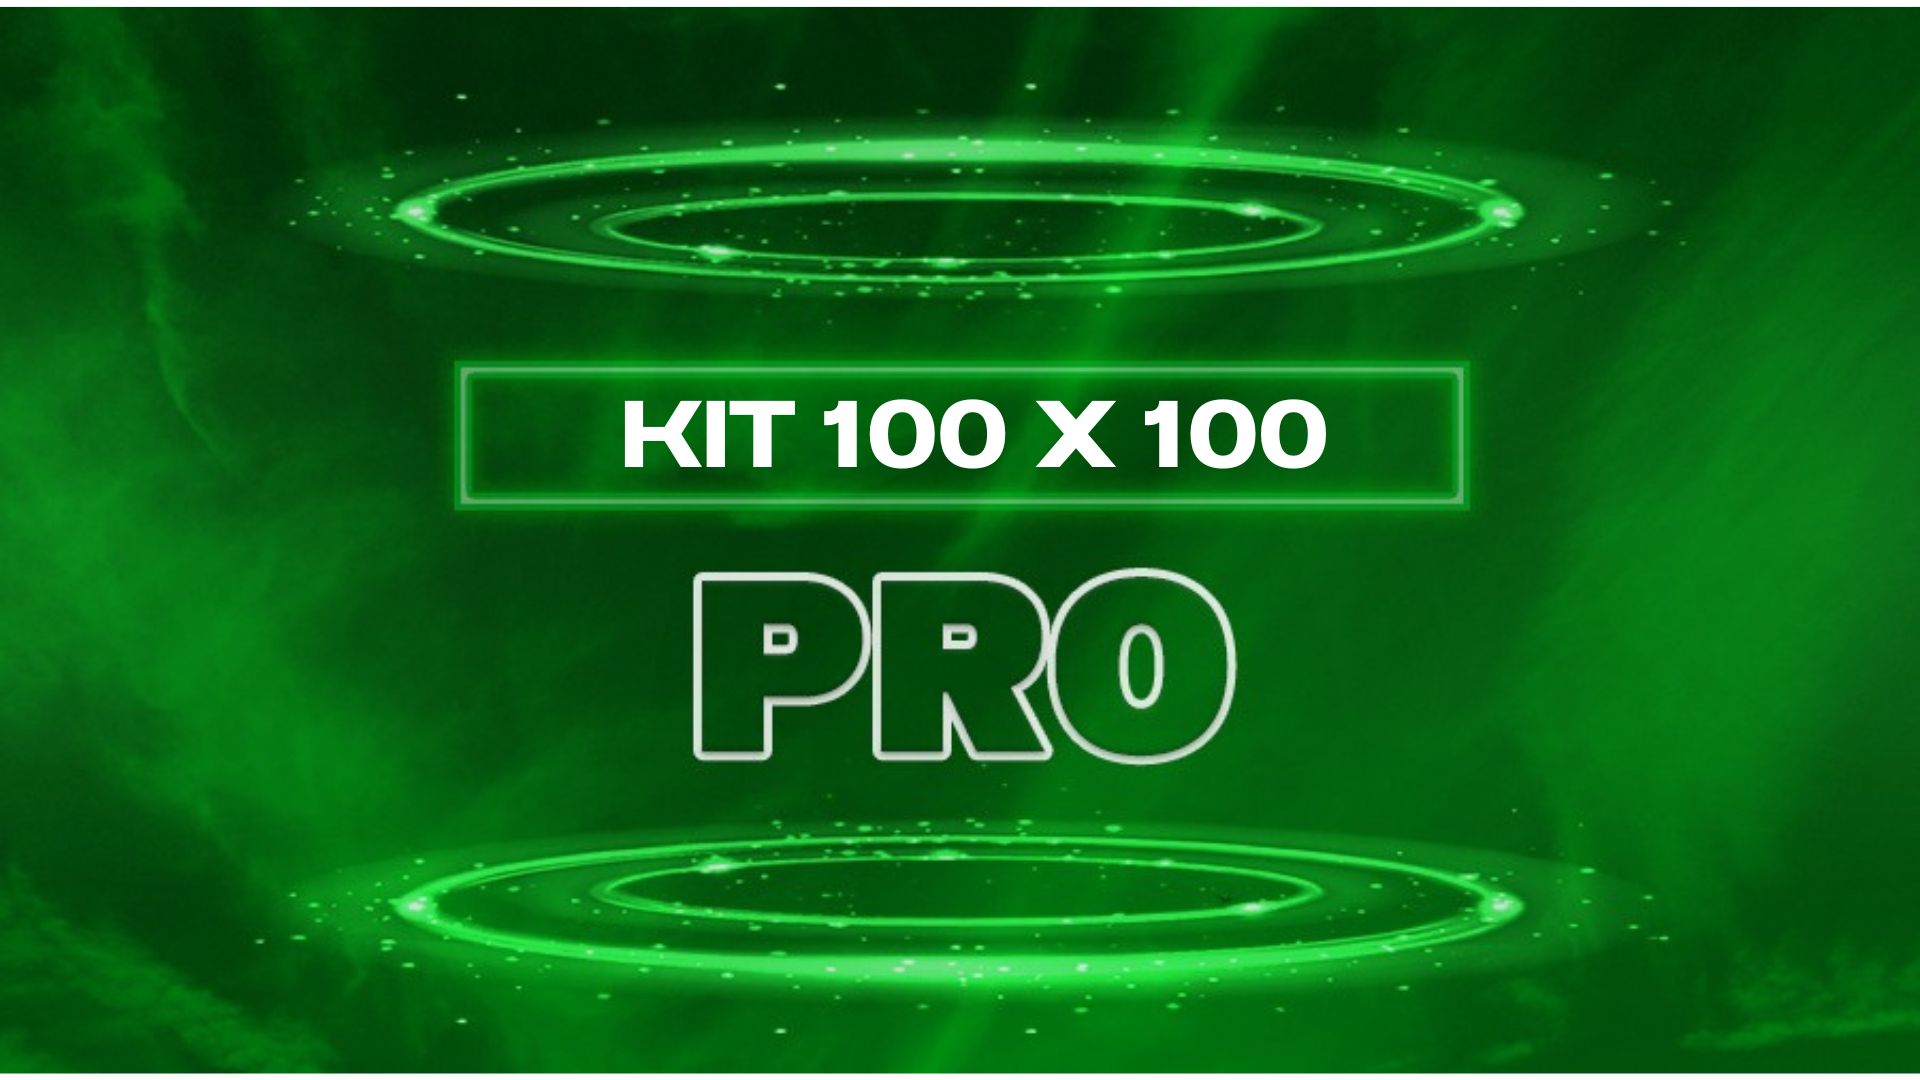 Kit-100-X-100-Pro-1